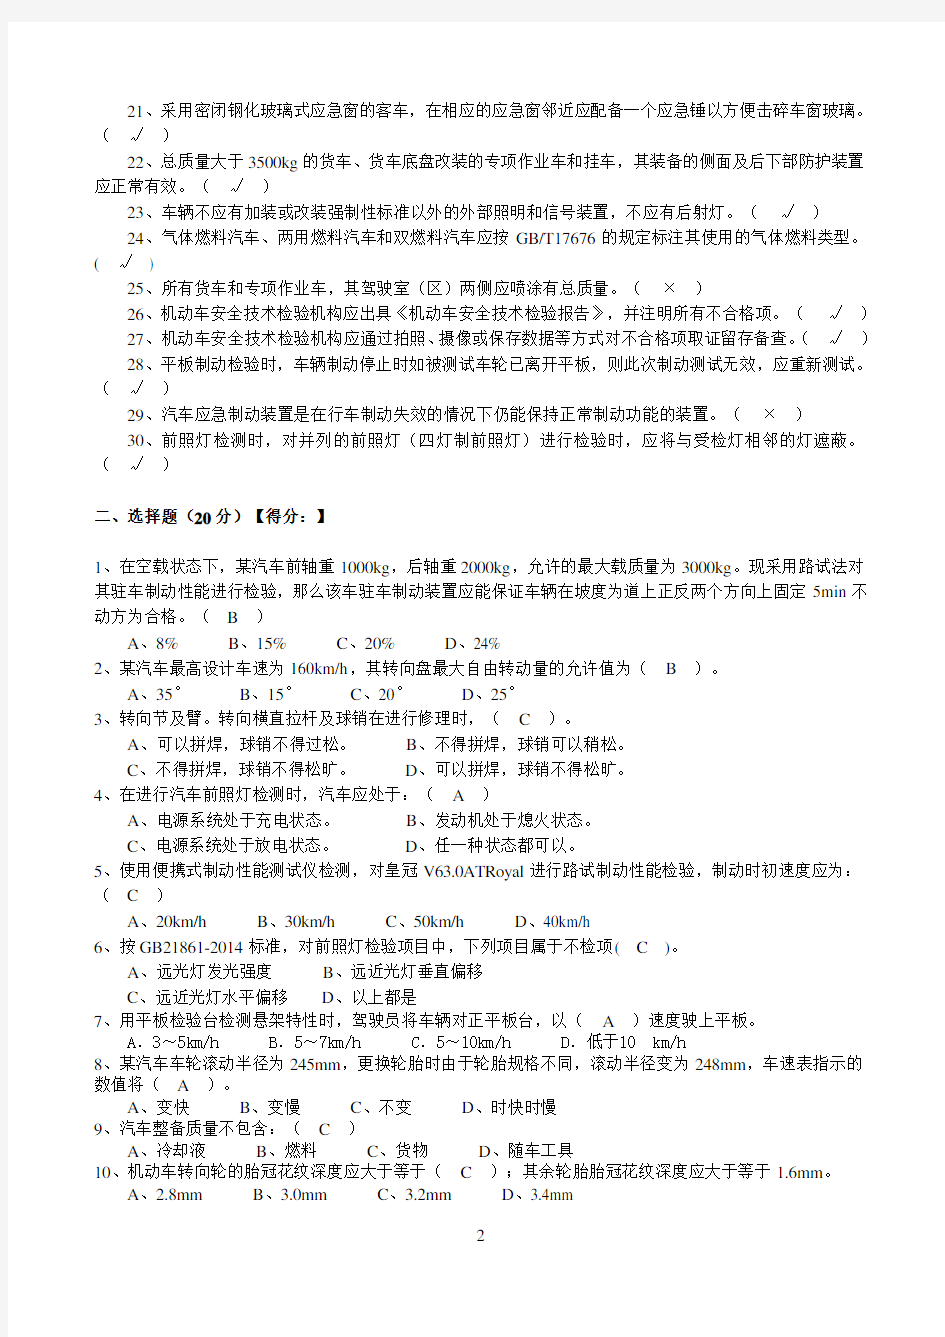 浙江省机动车安检机构检验员试卷(含答案)(GB21861-2014)